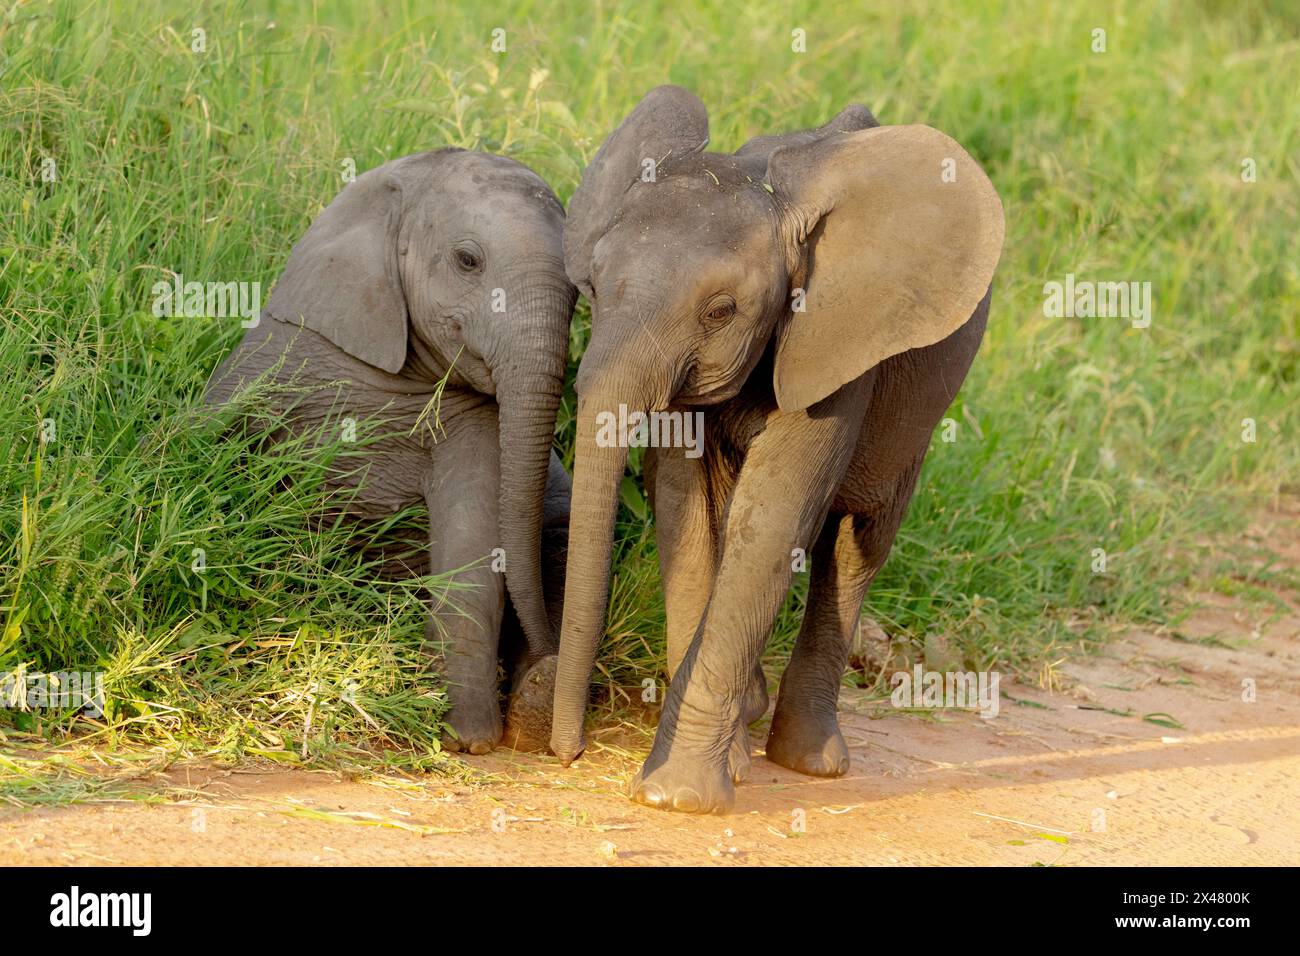 Africa, Tanzania, elefante africano. Ritratto di due giovani elefanti nell'erba. Foto Stock